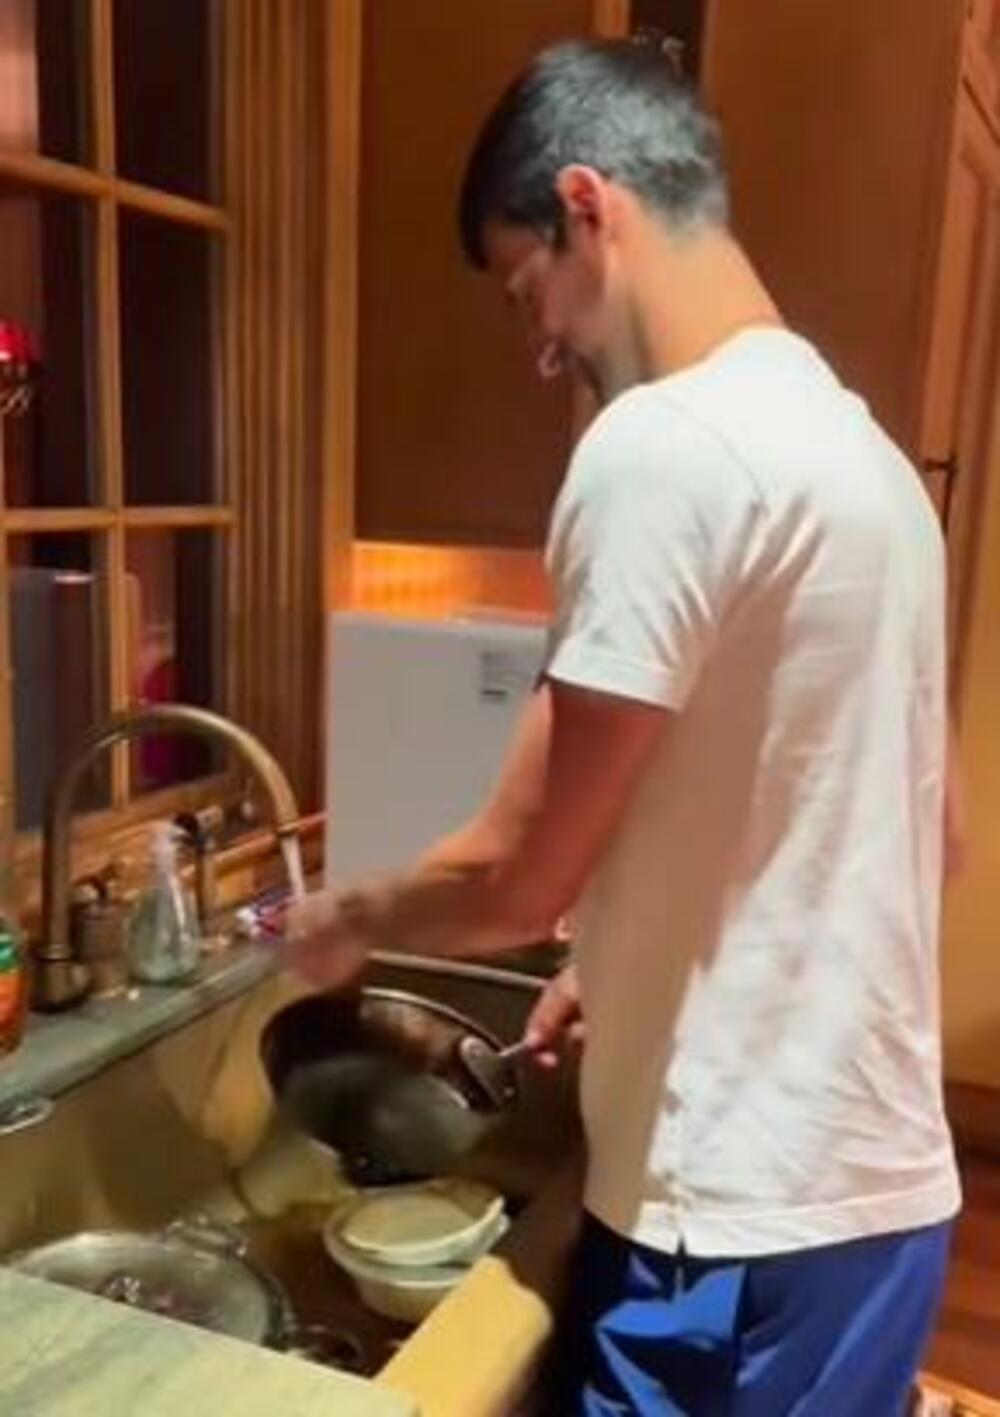 Novak je oprao sudove, tačnije šerpe, jer kako je istakao, obožava da pere šerpe i lonce